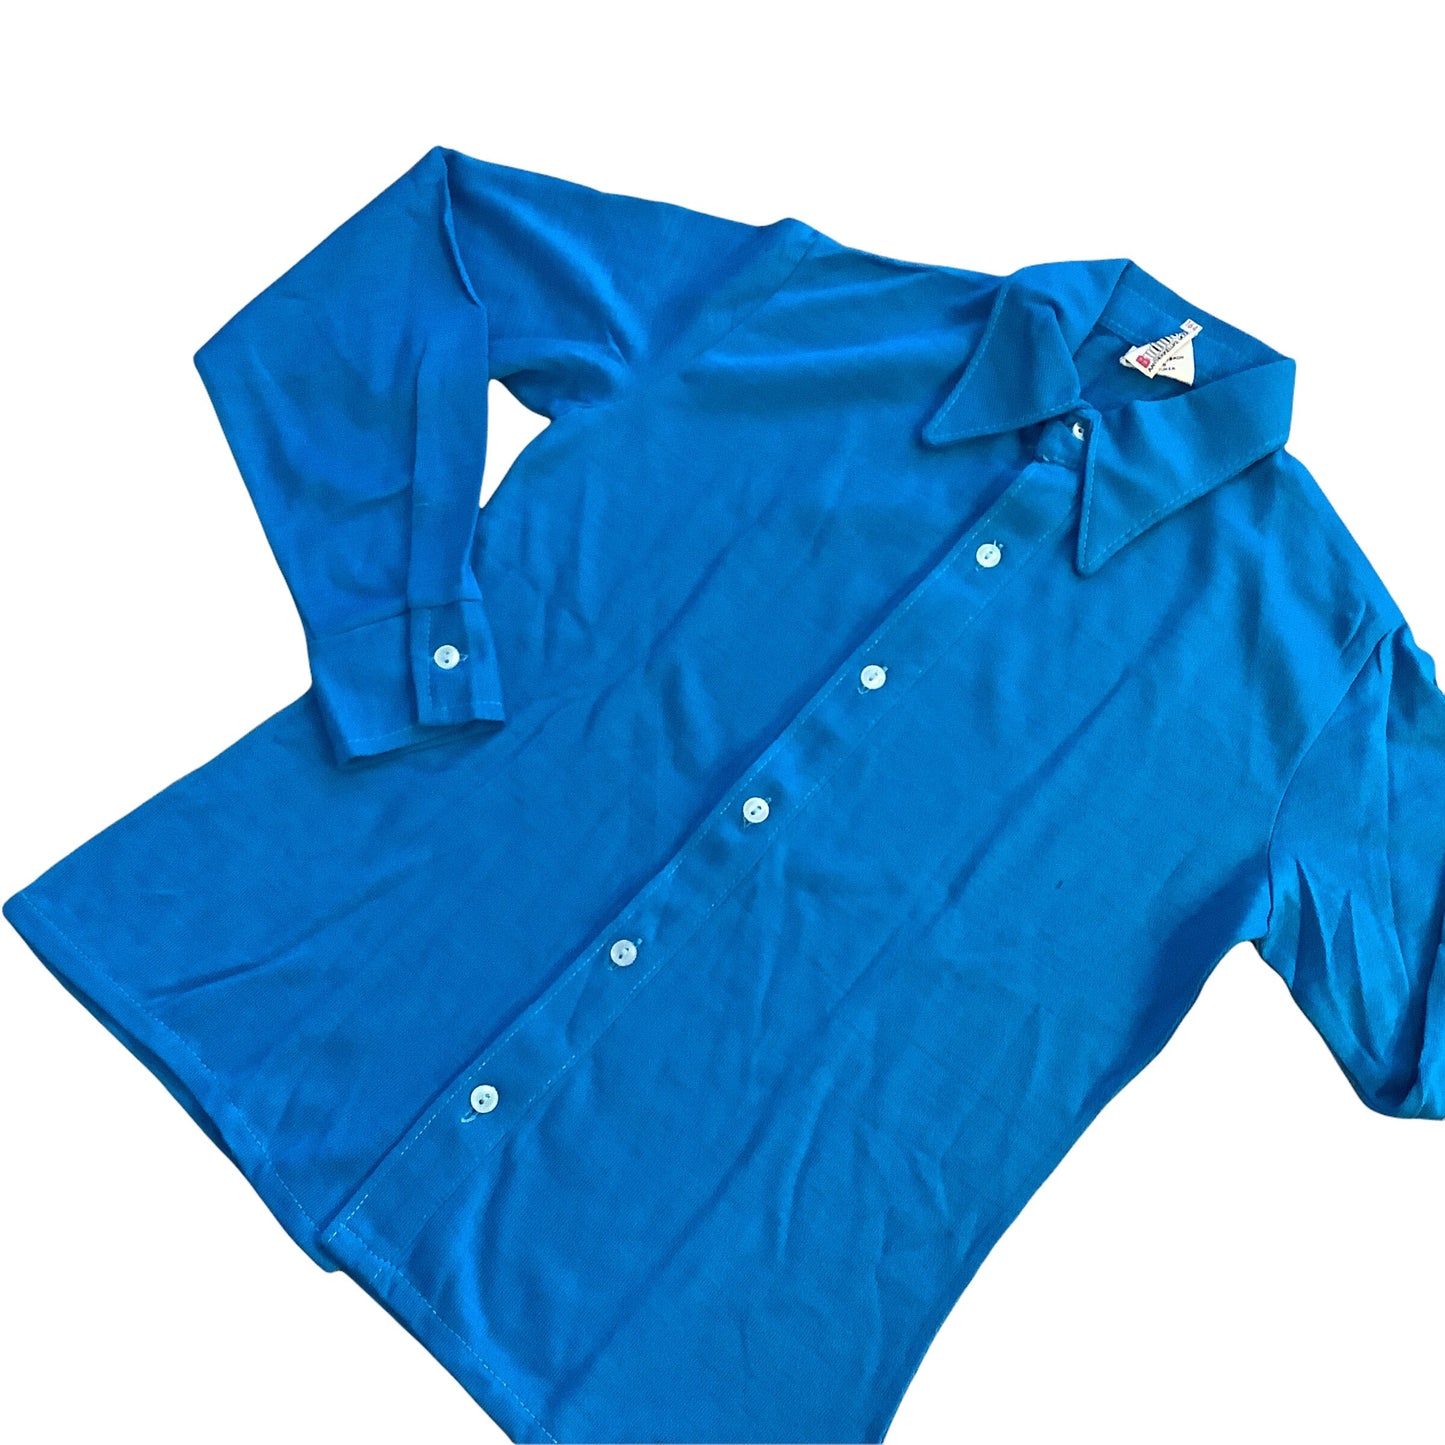 Vintage 1970's Children's Blue Shirt  5-6Y